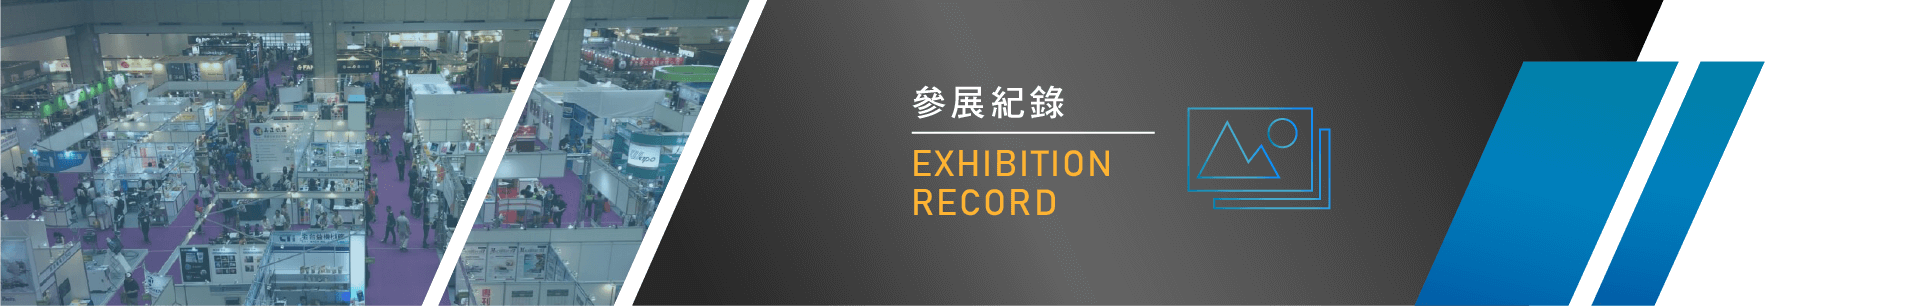 2016 台北國際包裝工業展